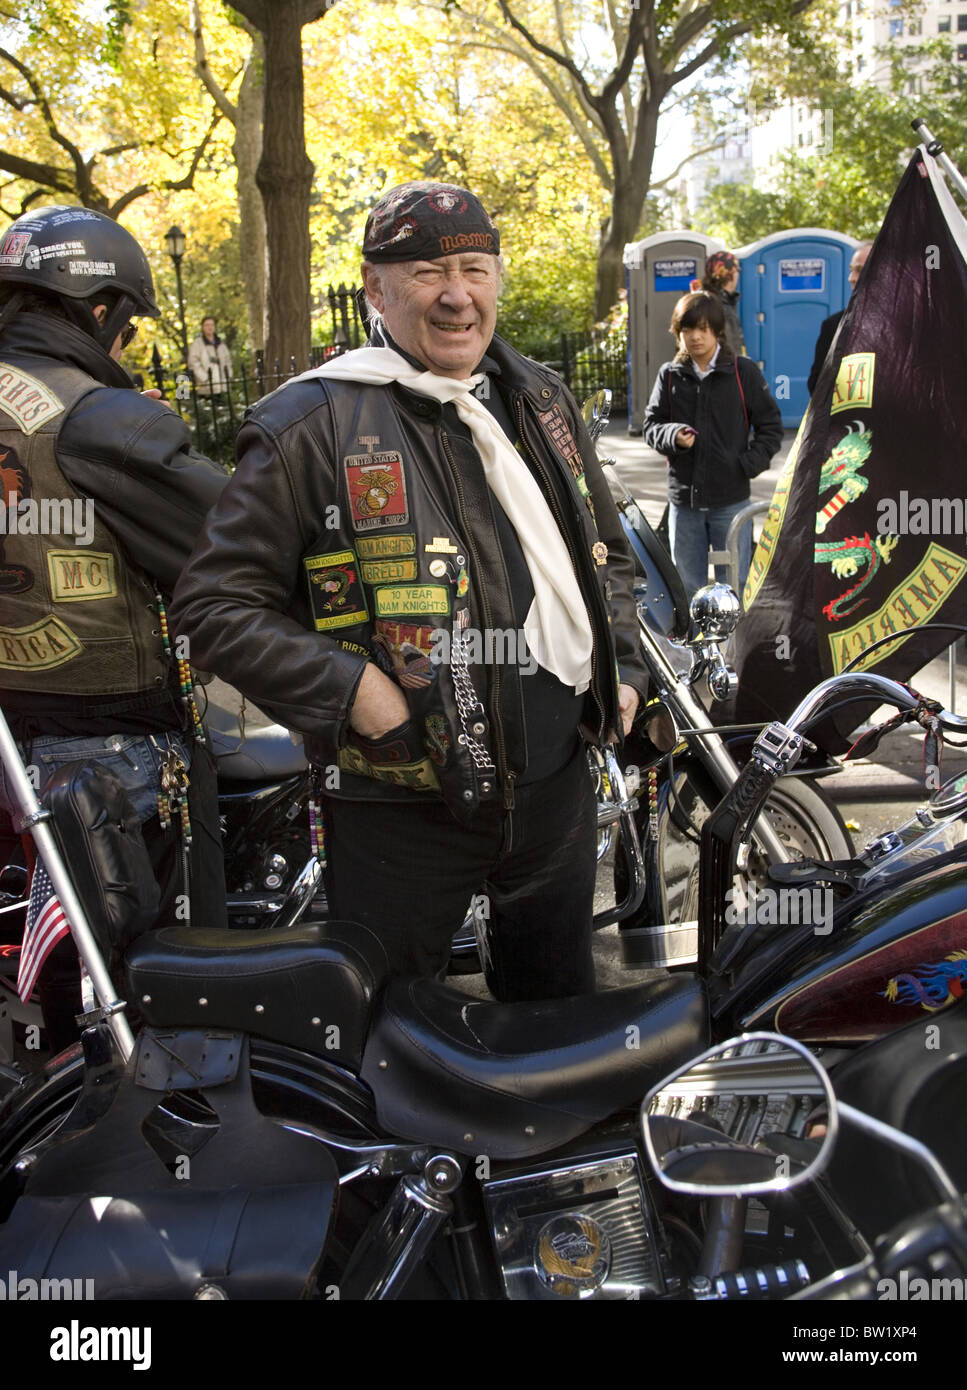 Défilé des anciens combattants, 5e Avenue, New York City. Membre de la Nam Knights, Marine Vietnam Vets monter des motos dans le défilé. Banque D'Images